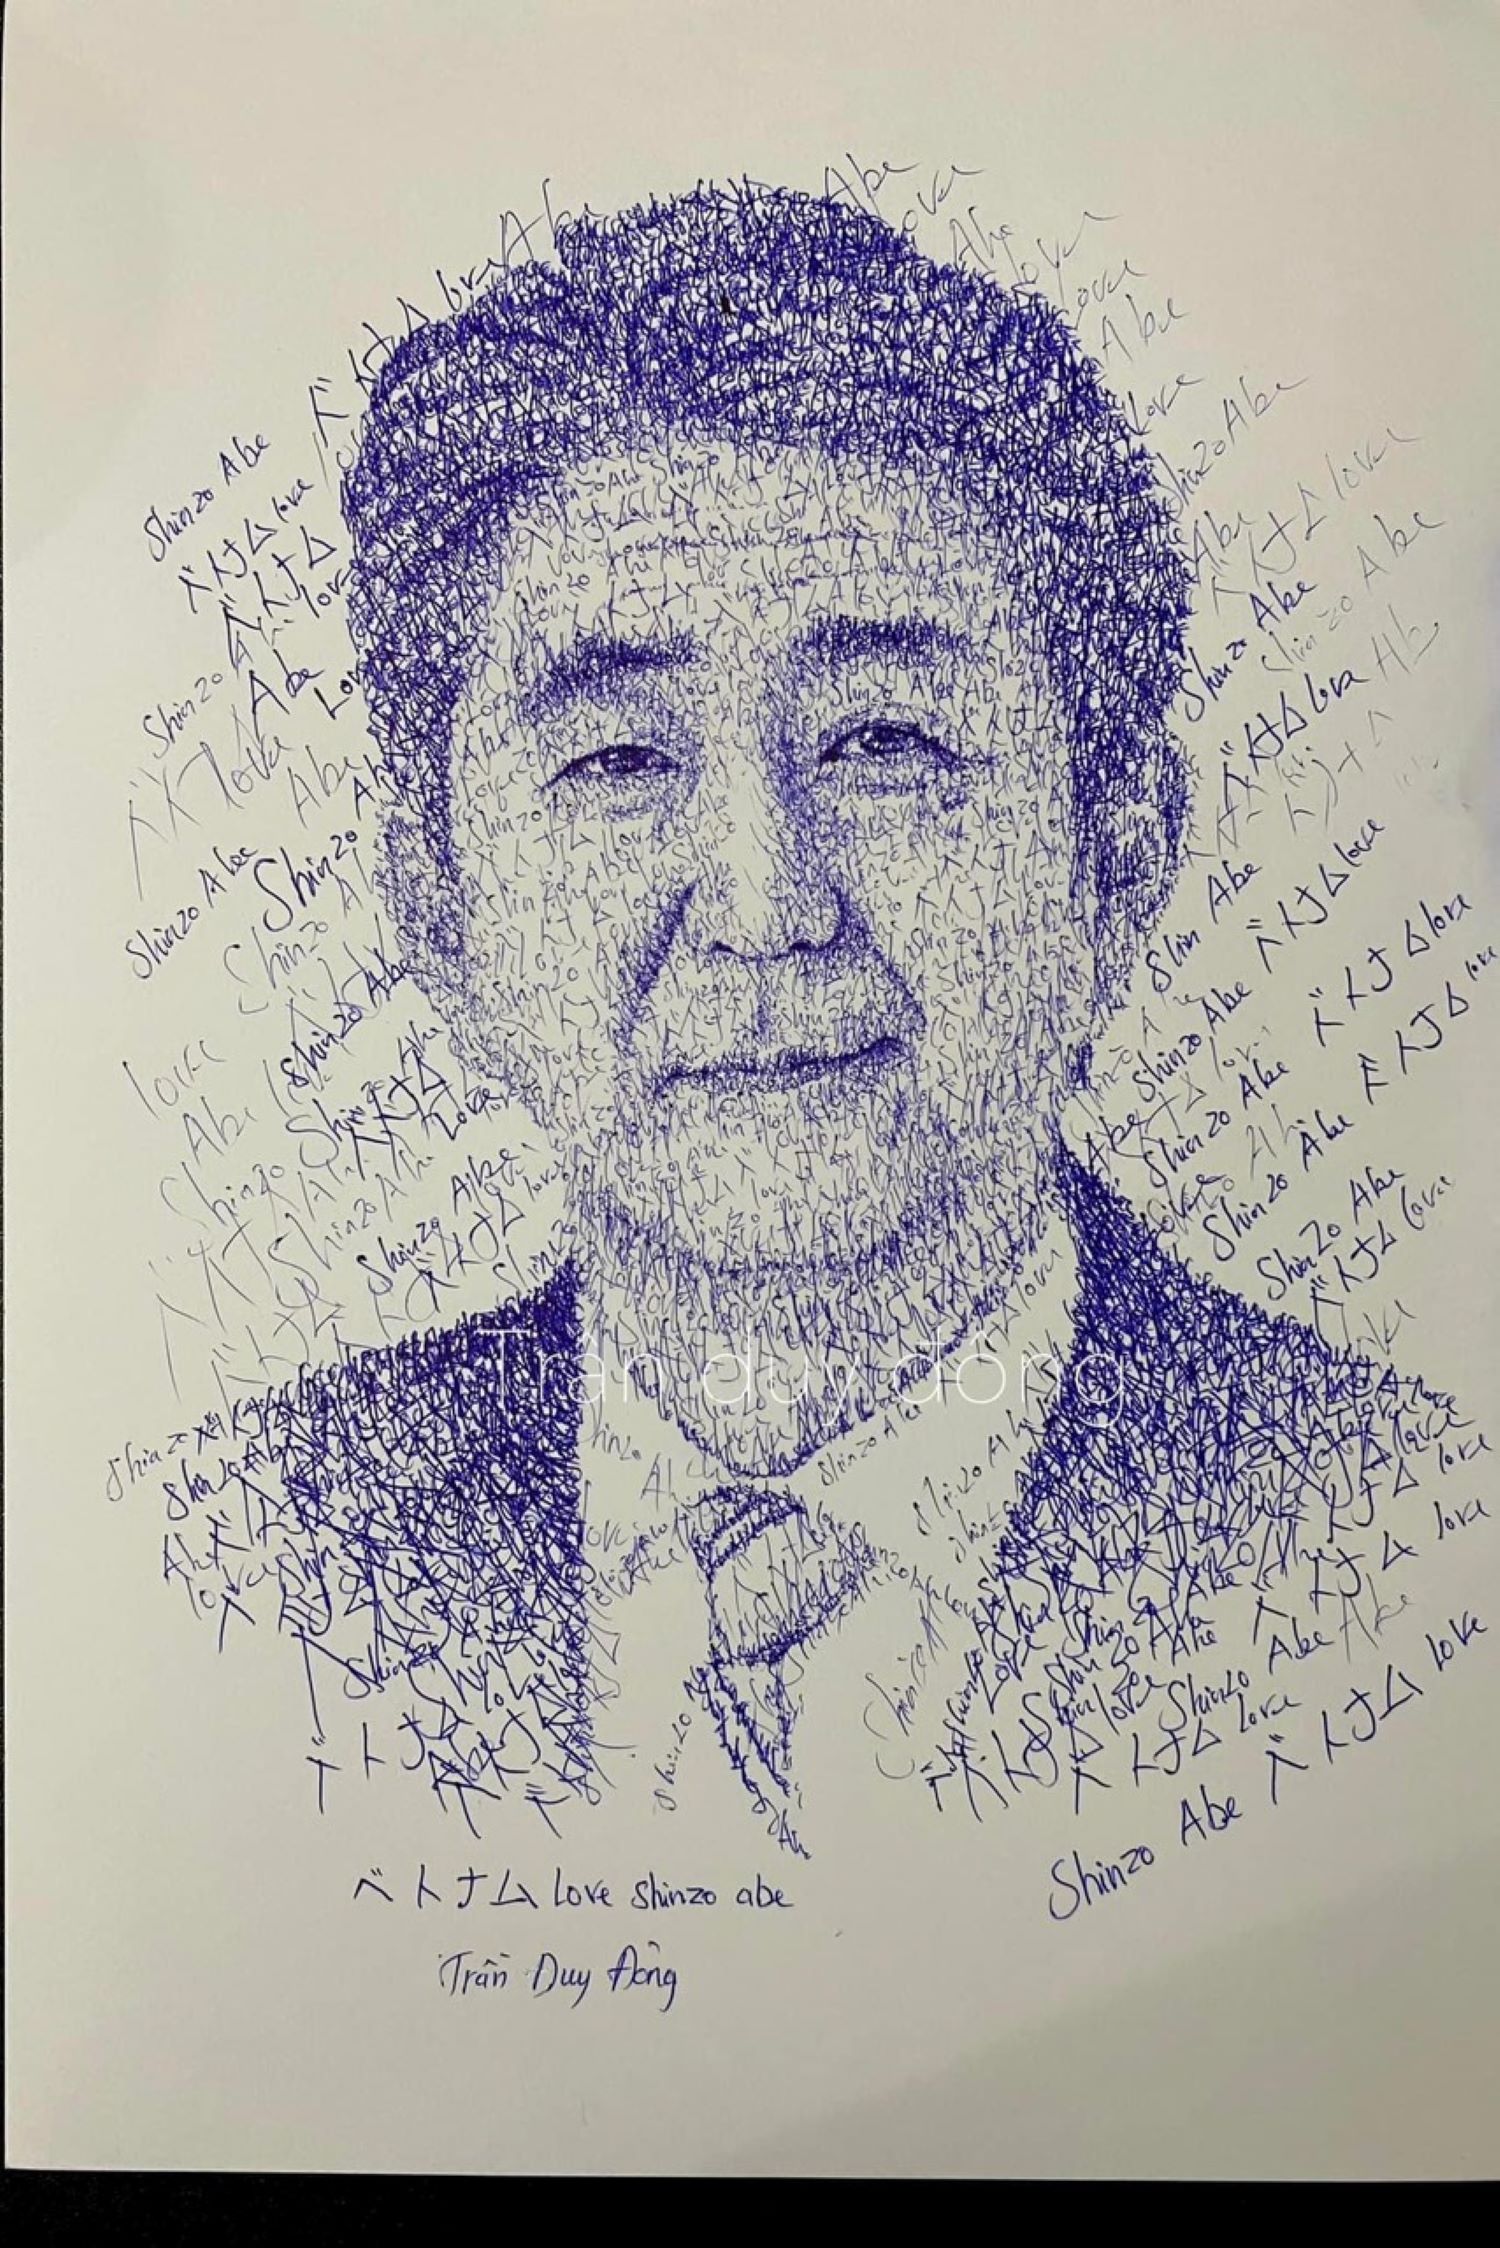 Shinzo Abe: Khám phá về người đứng đầu đất nước mặt trời mọc - Shinzo Abe. Những bức ảnh sống động về những chính sách mới được triển khai để phát triển đất nước.